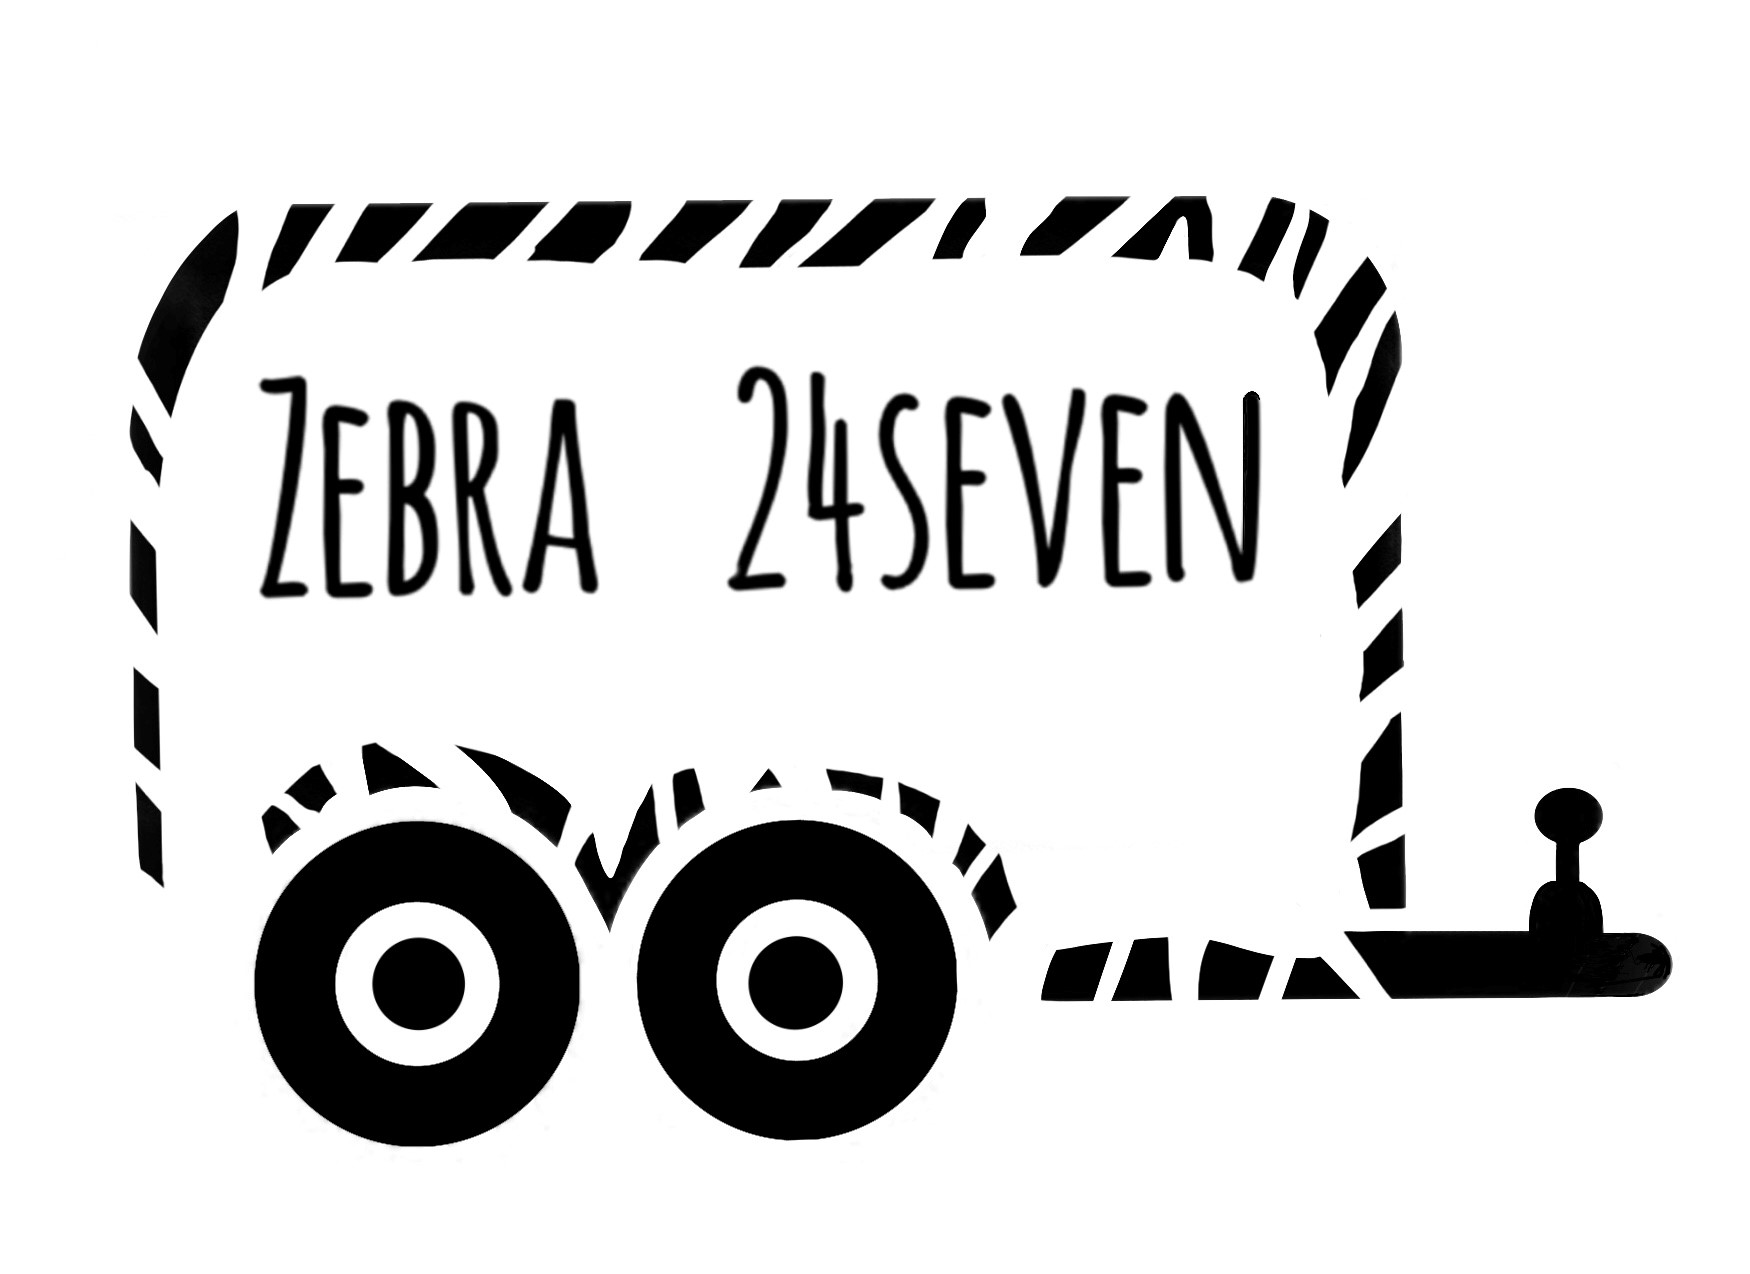 Zebra24Seven